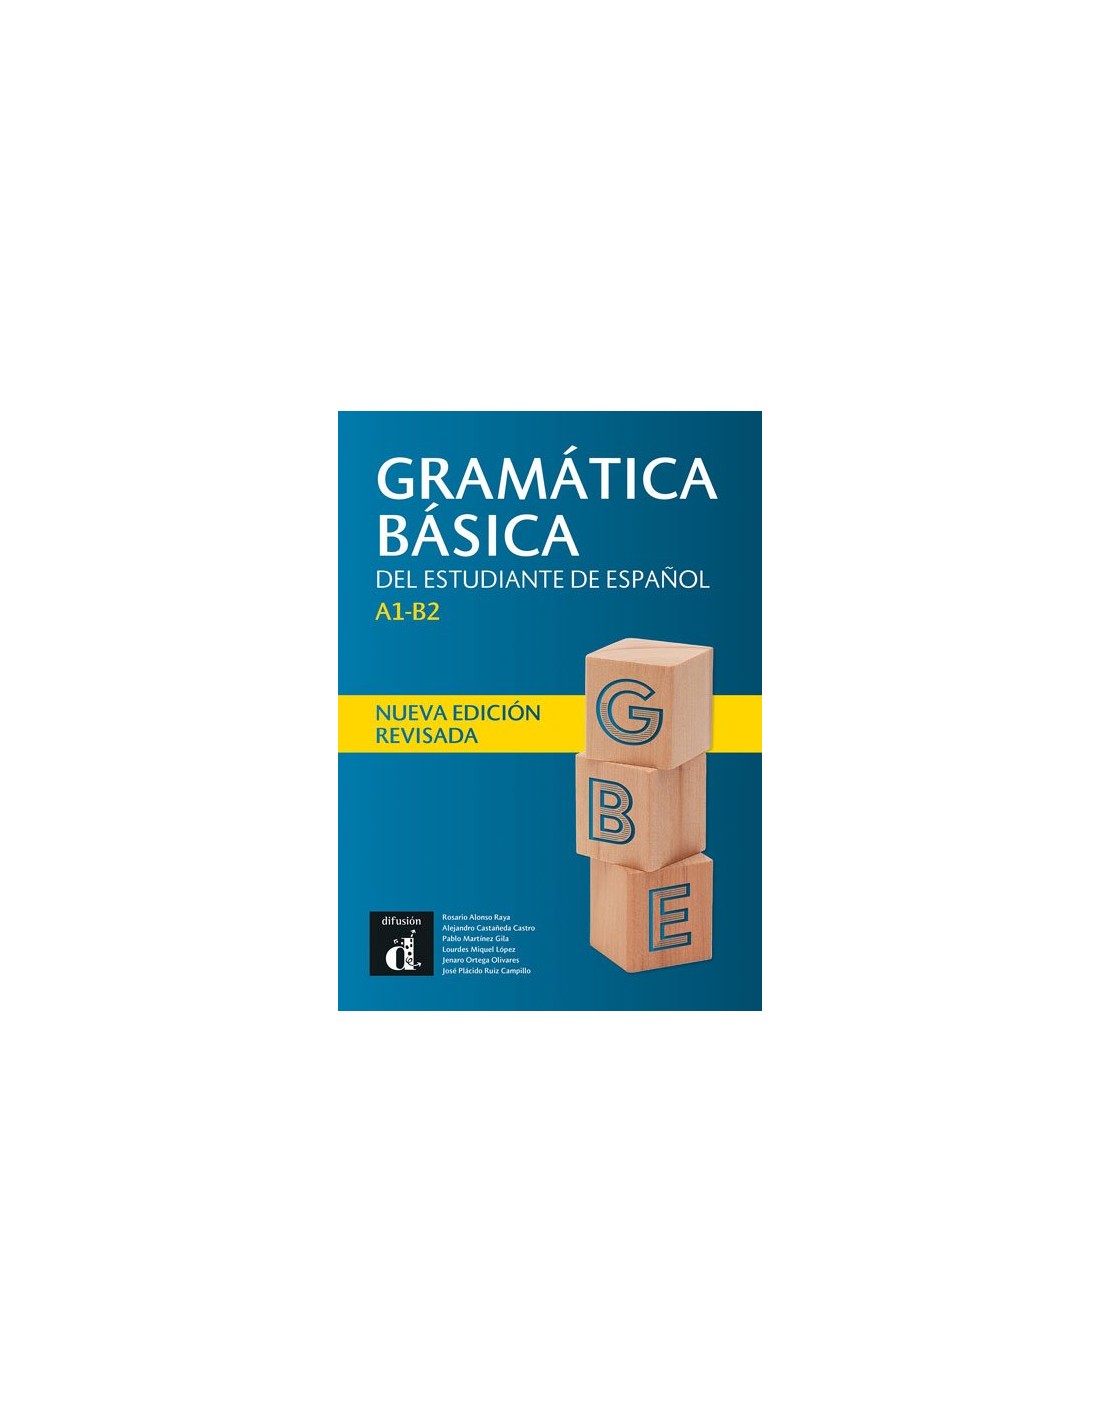 Grammatica basica del estudiante de espanol A1-B1 